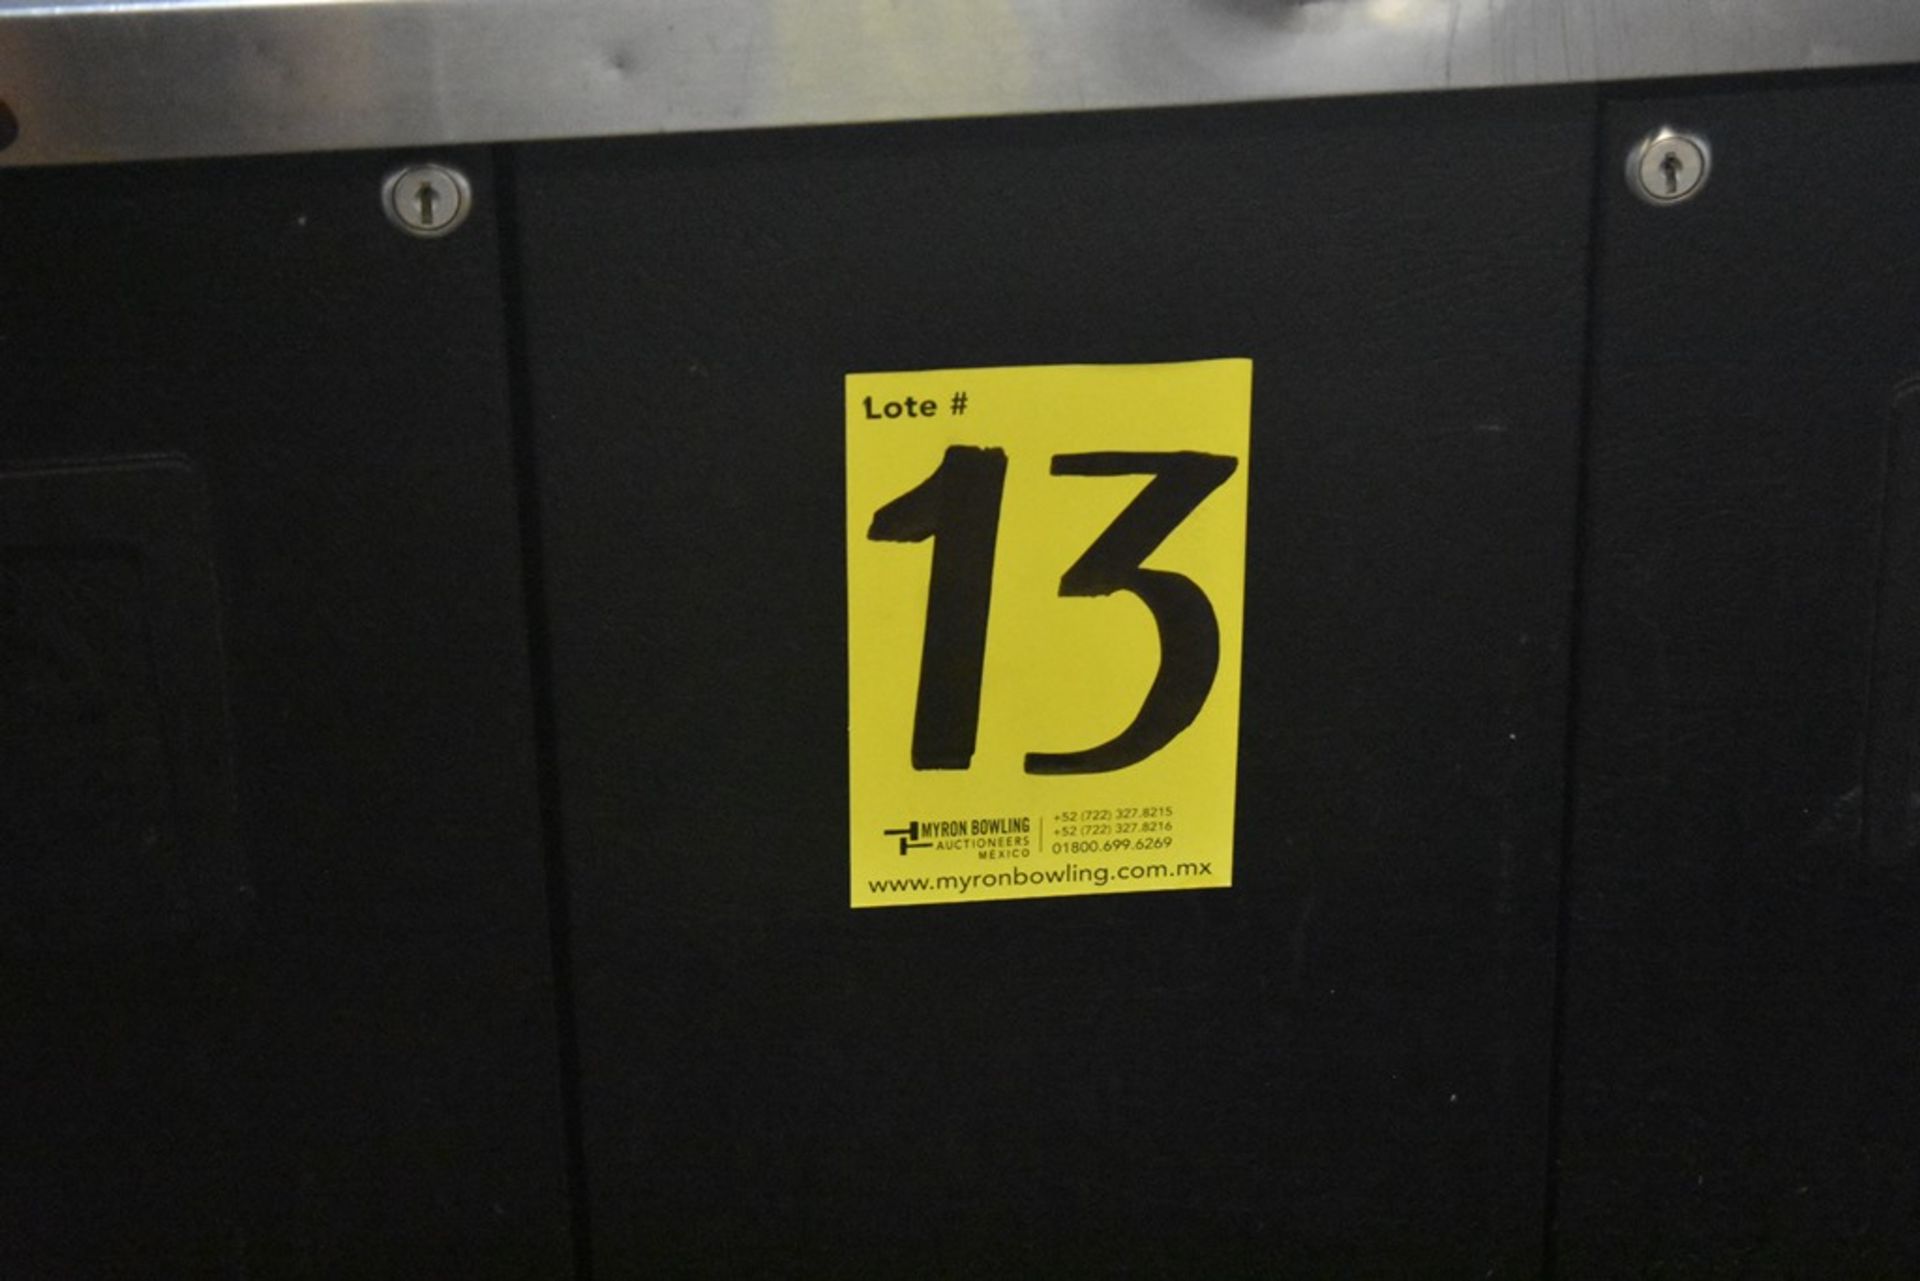 Mesa de trabajo refrigerada con cubierta en acero inoxidable marca True, modelo TBB-3, número de se - Image 20 of 20